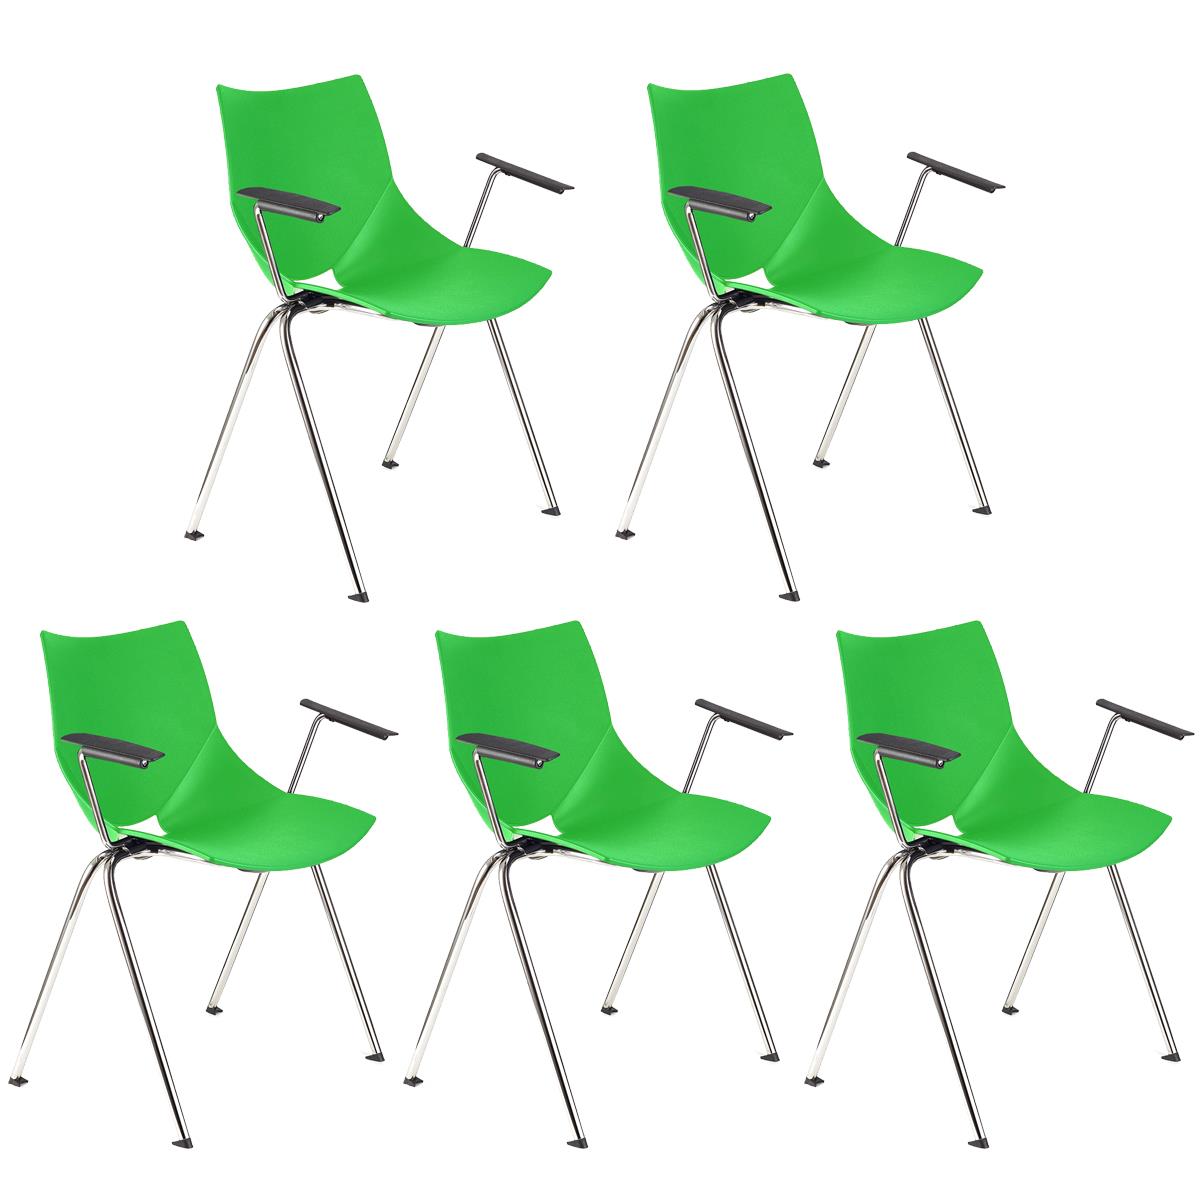 Lote 5 Cadeiras de Visita AMIR COM BRAÇOS, Confortável e Empilhável, Cor Verde